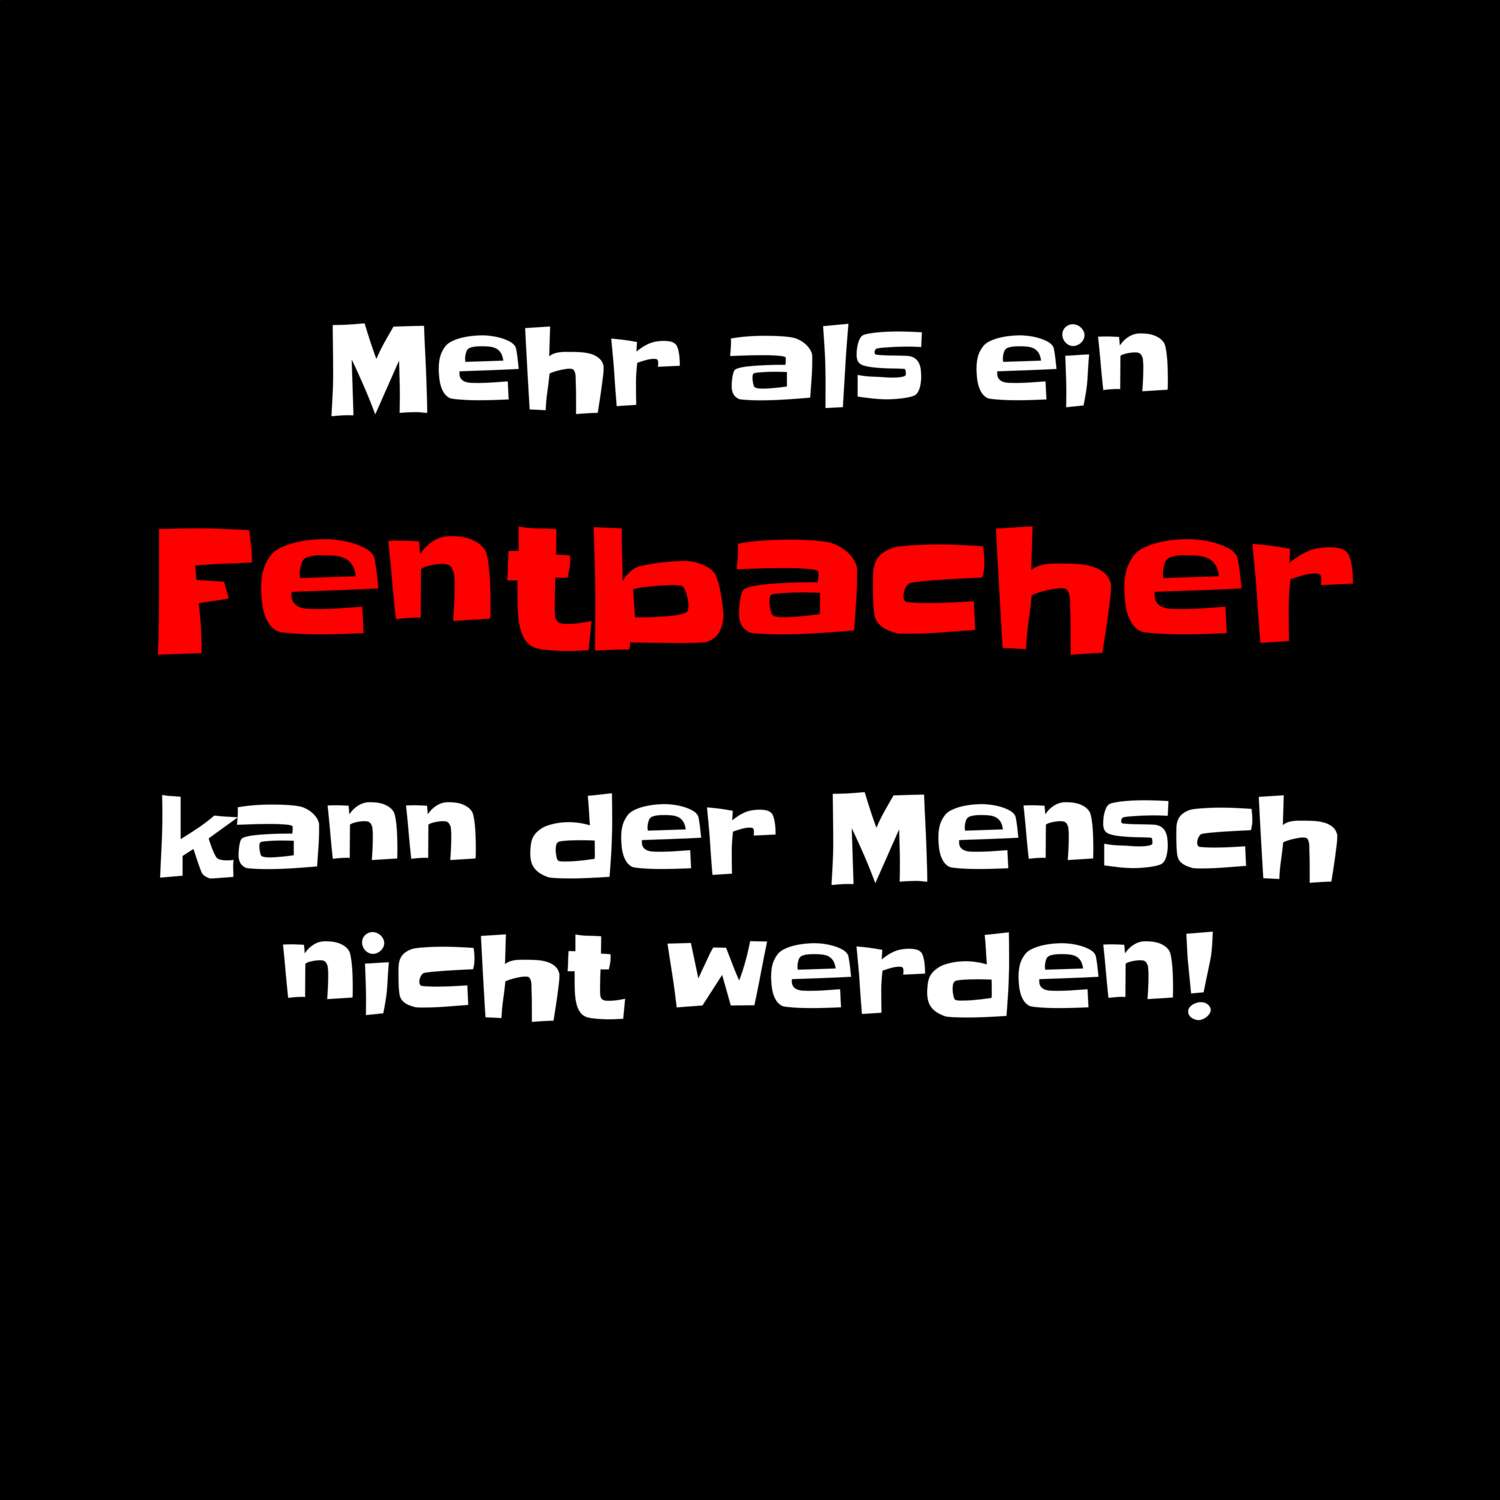 Fentbach T-Shirt »Mehr als ein«